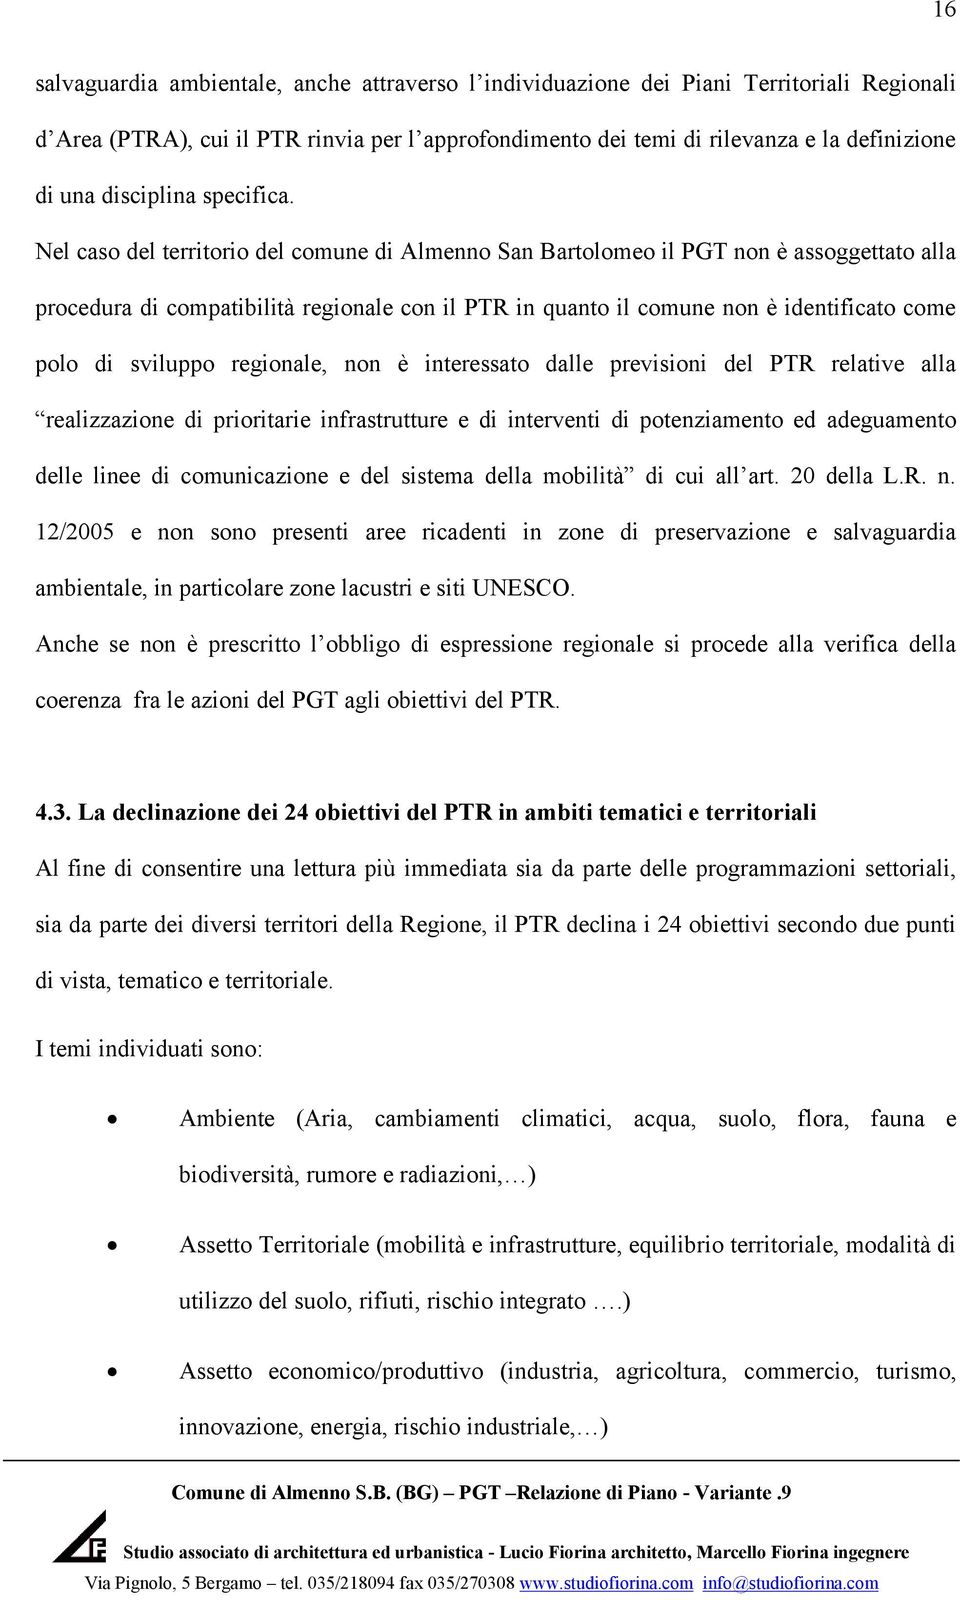 Nel caso del territorio del comune di Almenno San Bartolomeo il PGT non è assoggettato alla procedura di compatibilità regionale con il PTR in quanto il comune non è identificato come polo di